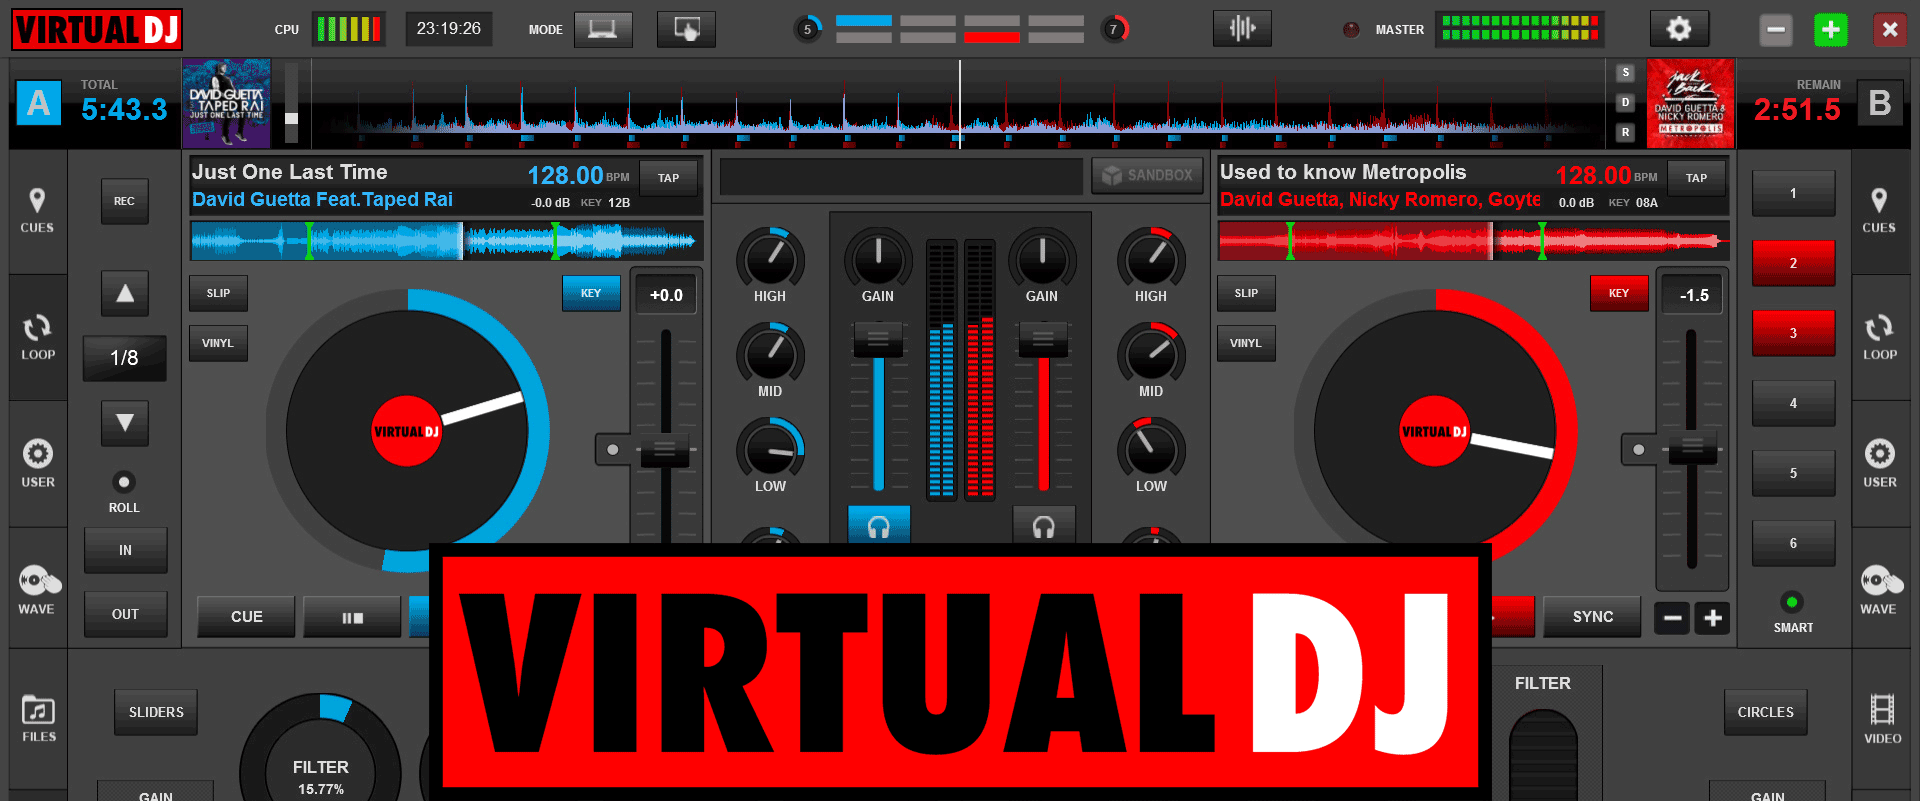 virtual dj 8 pro full download mac